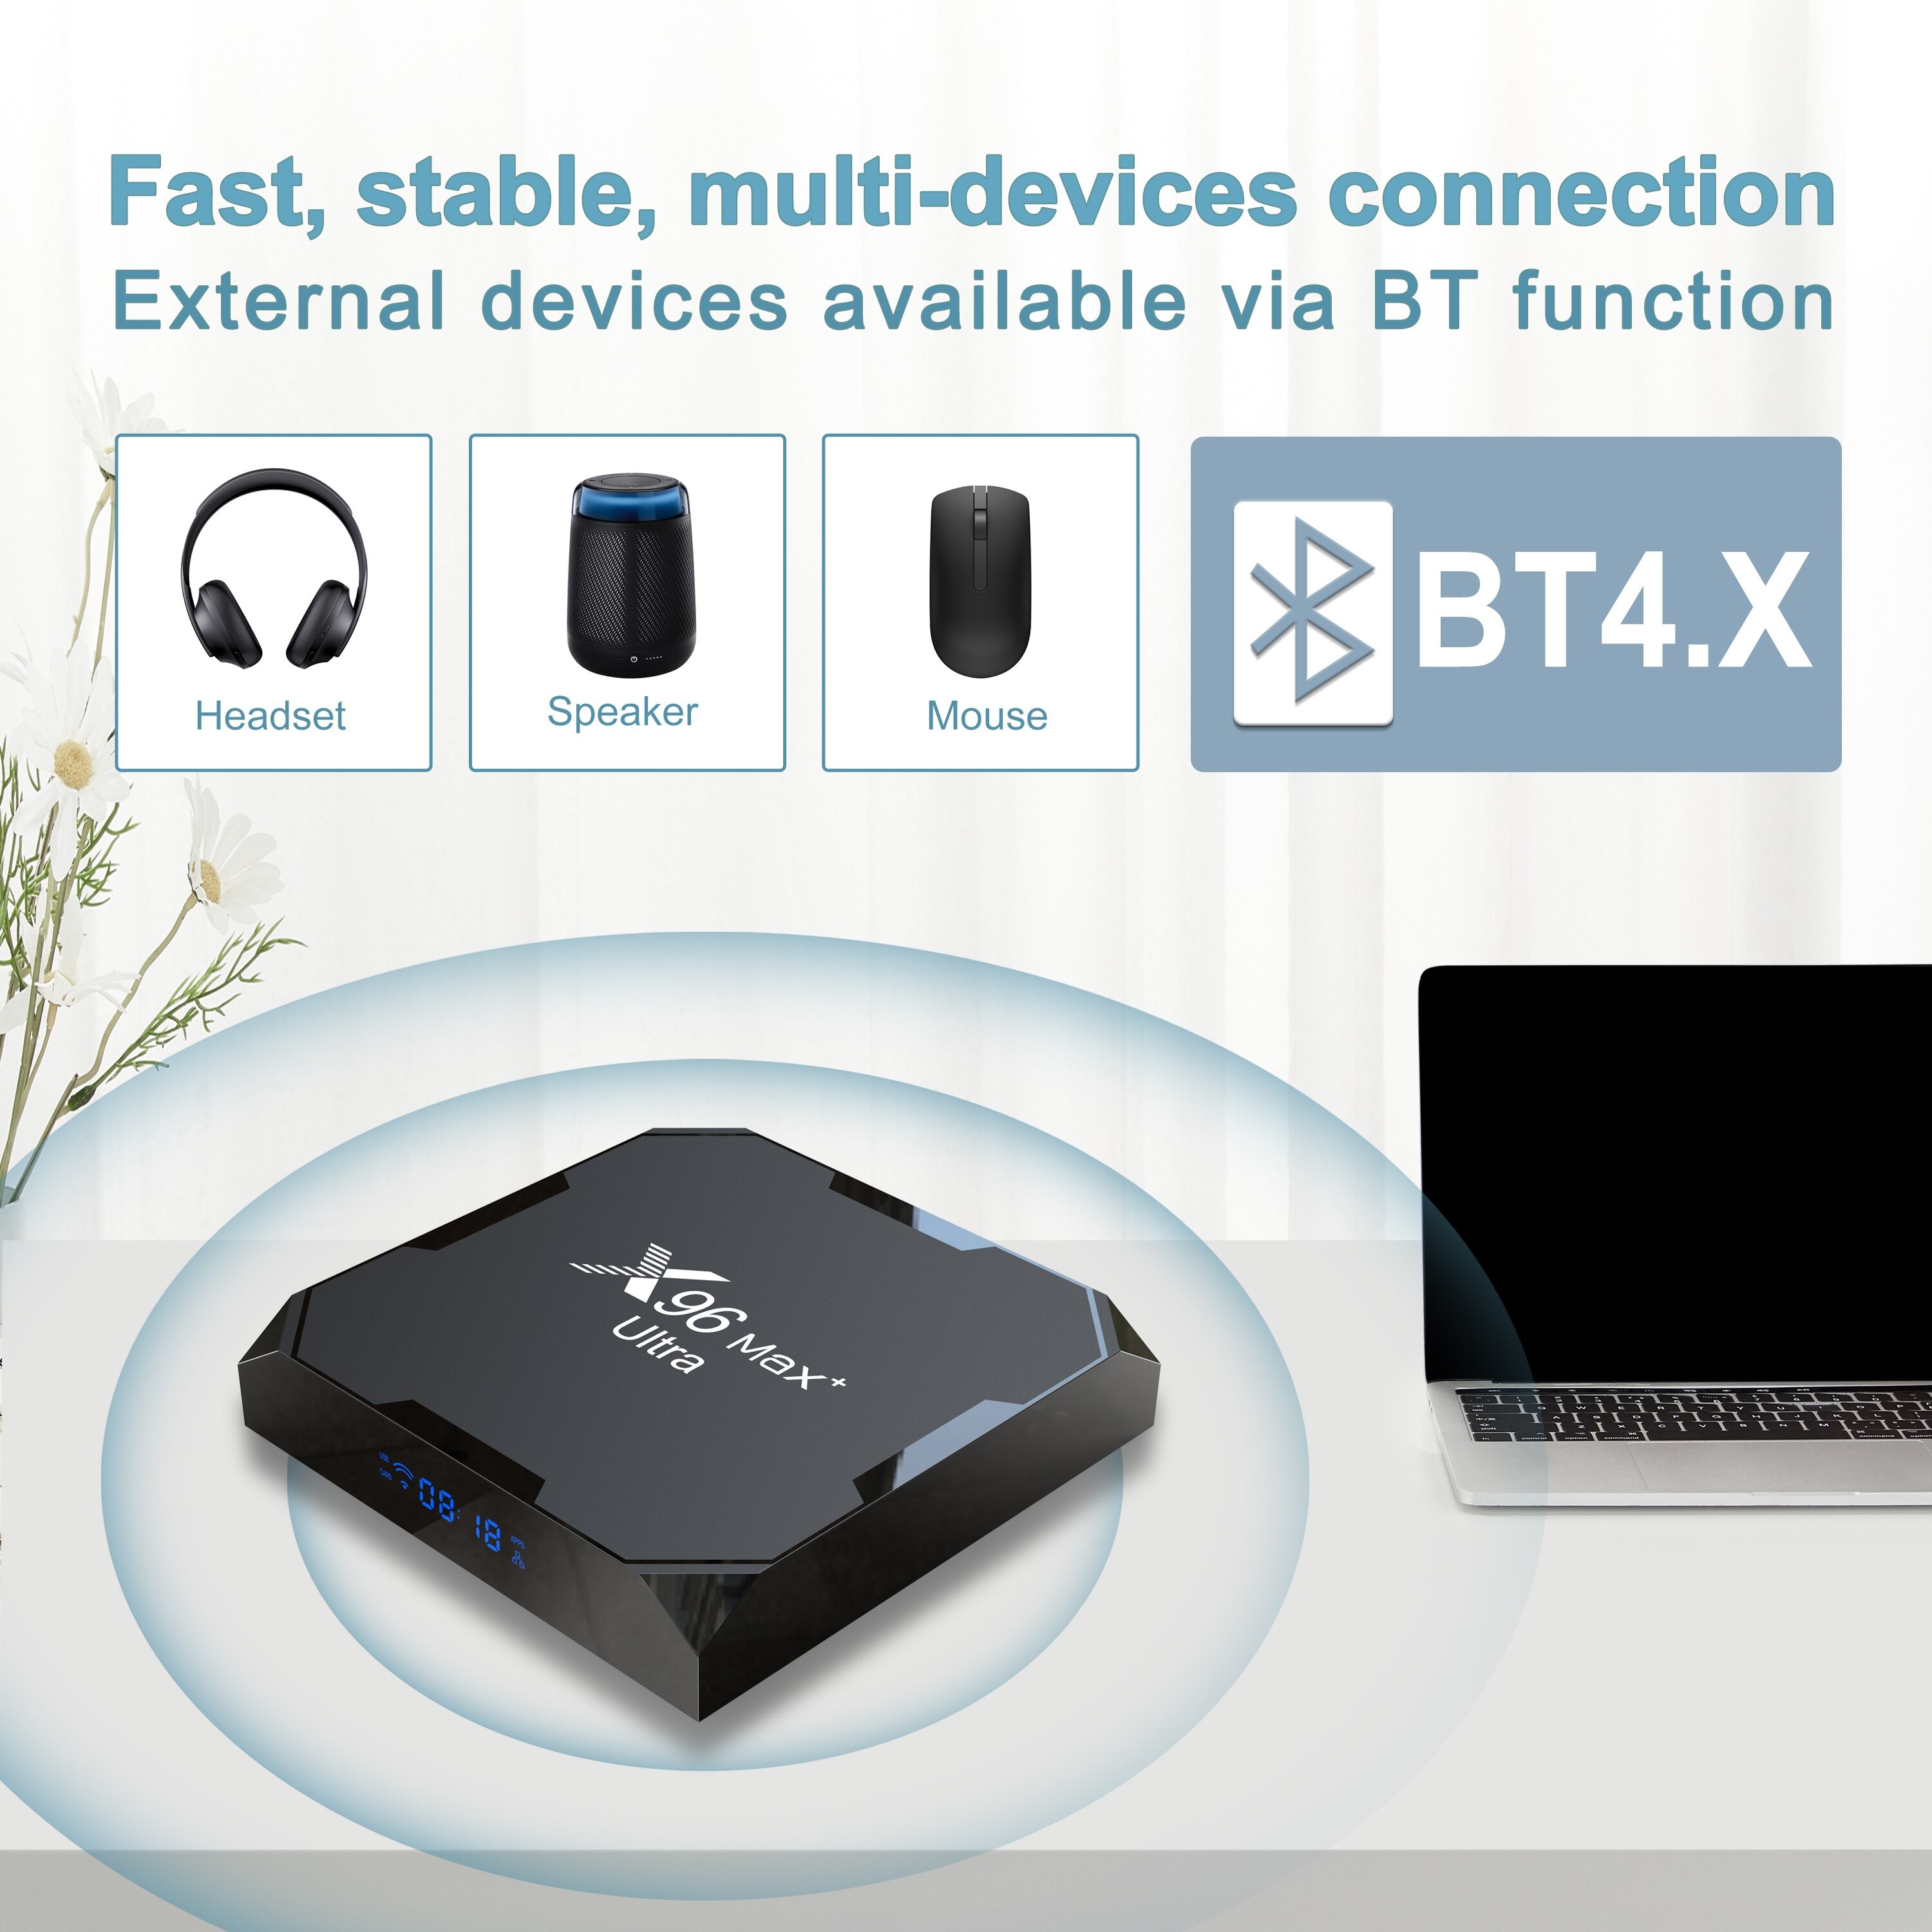 Tivi Box X96 Max plus ultra điều khiển cử chỉ và giọng nói tiếng việt Rom ATV mới Ram 4G Có Bluetooth S905X4 Wifi Kép Cài Sẵn Ứng Dụng Xem Phim Hd Và Truyền Hình Cáp miễn phí vĩnh viễn - Hàng chính hãng